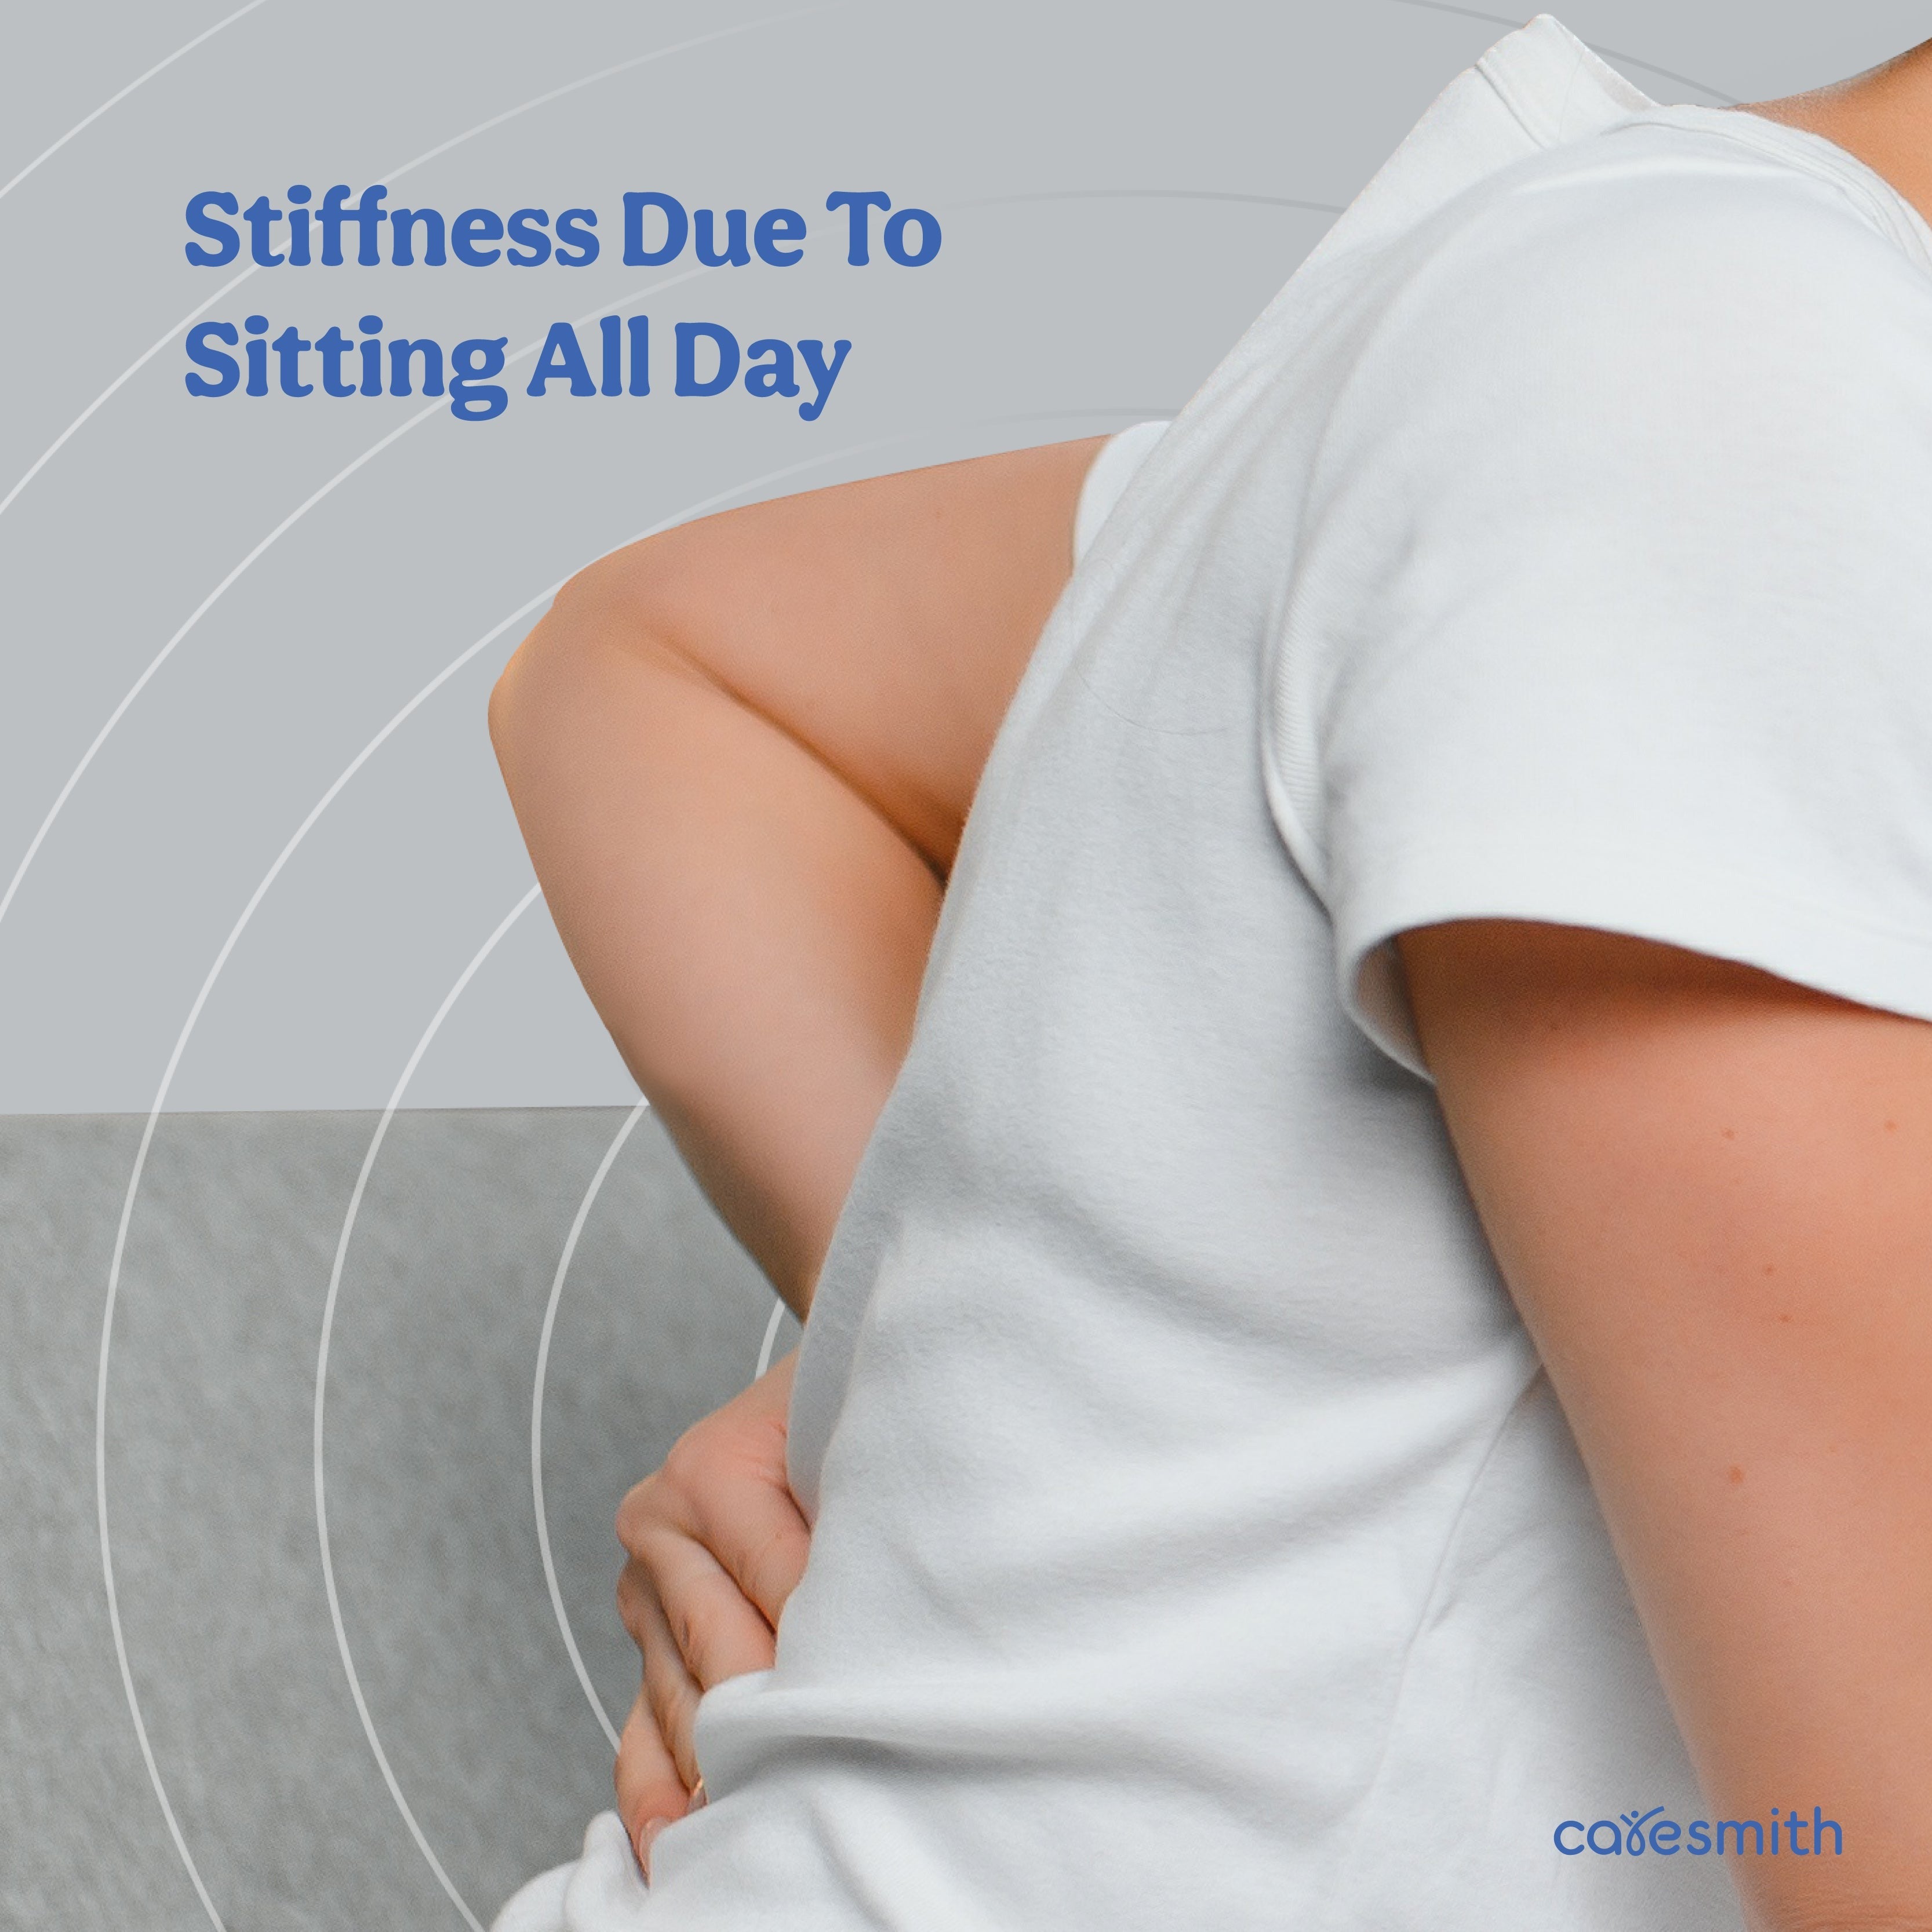 Stiffness due to sitting